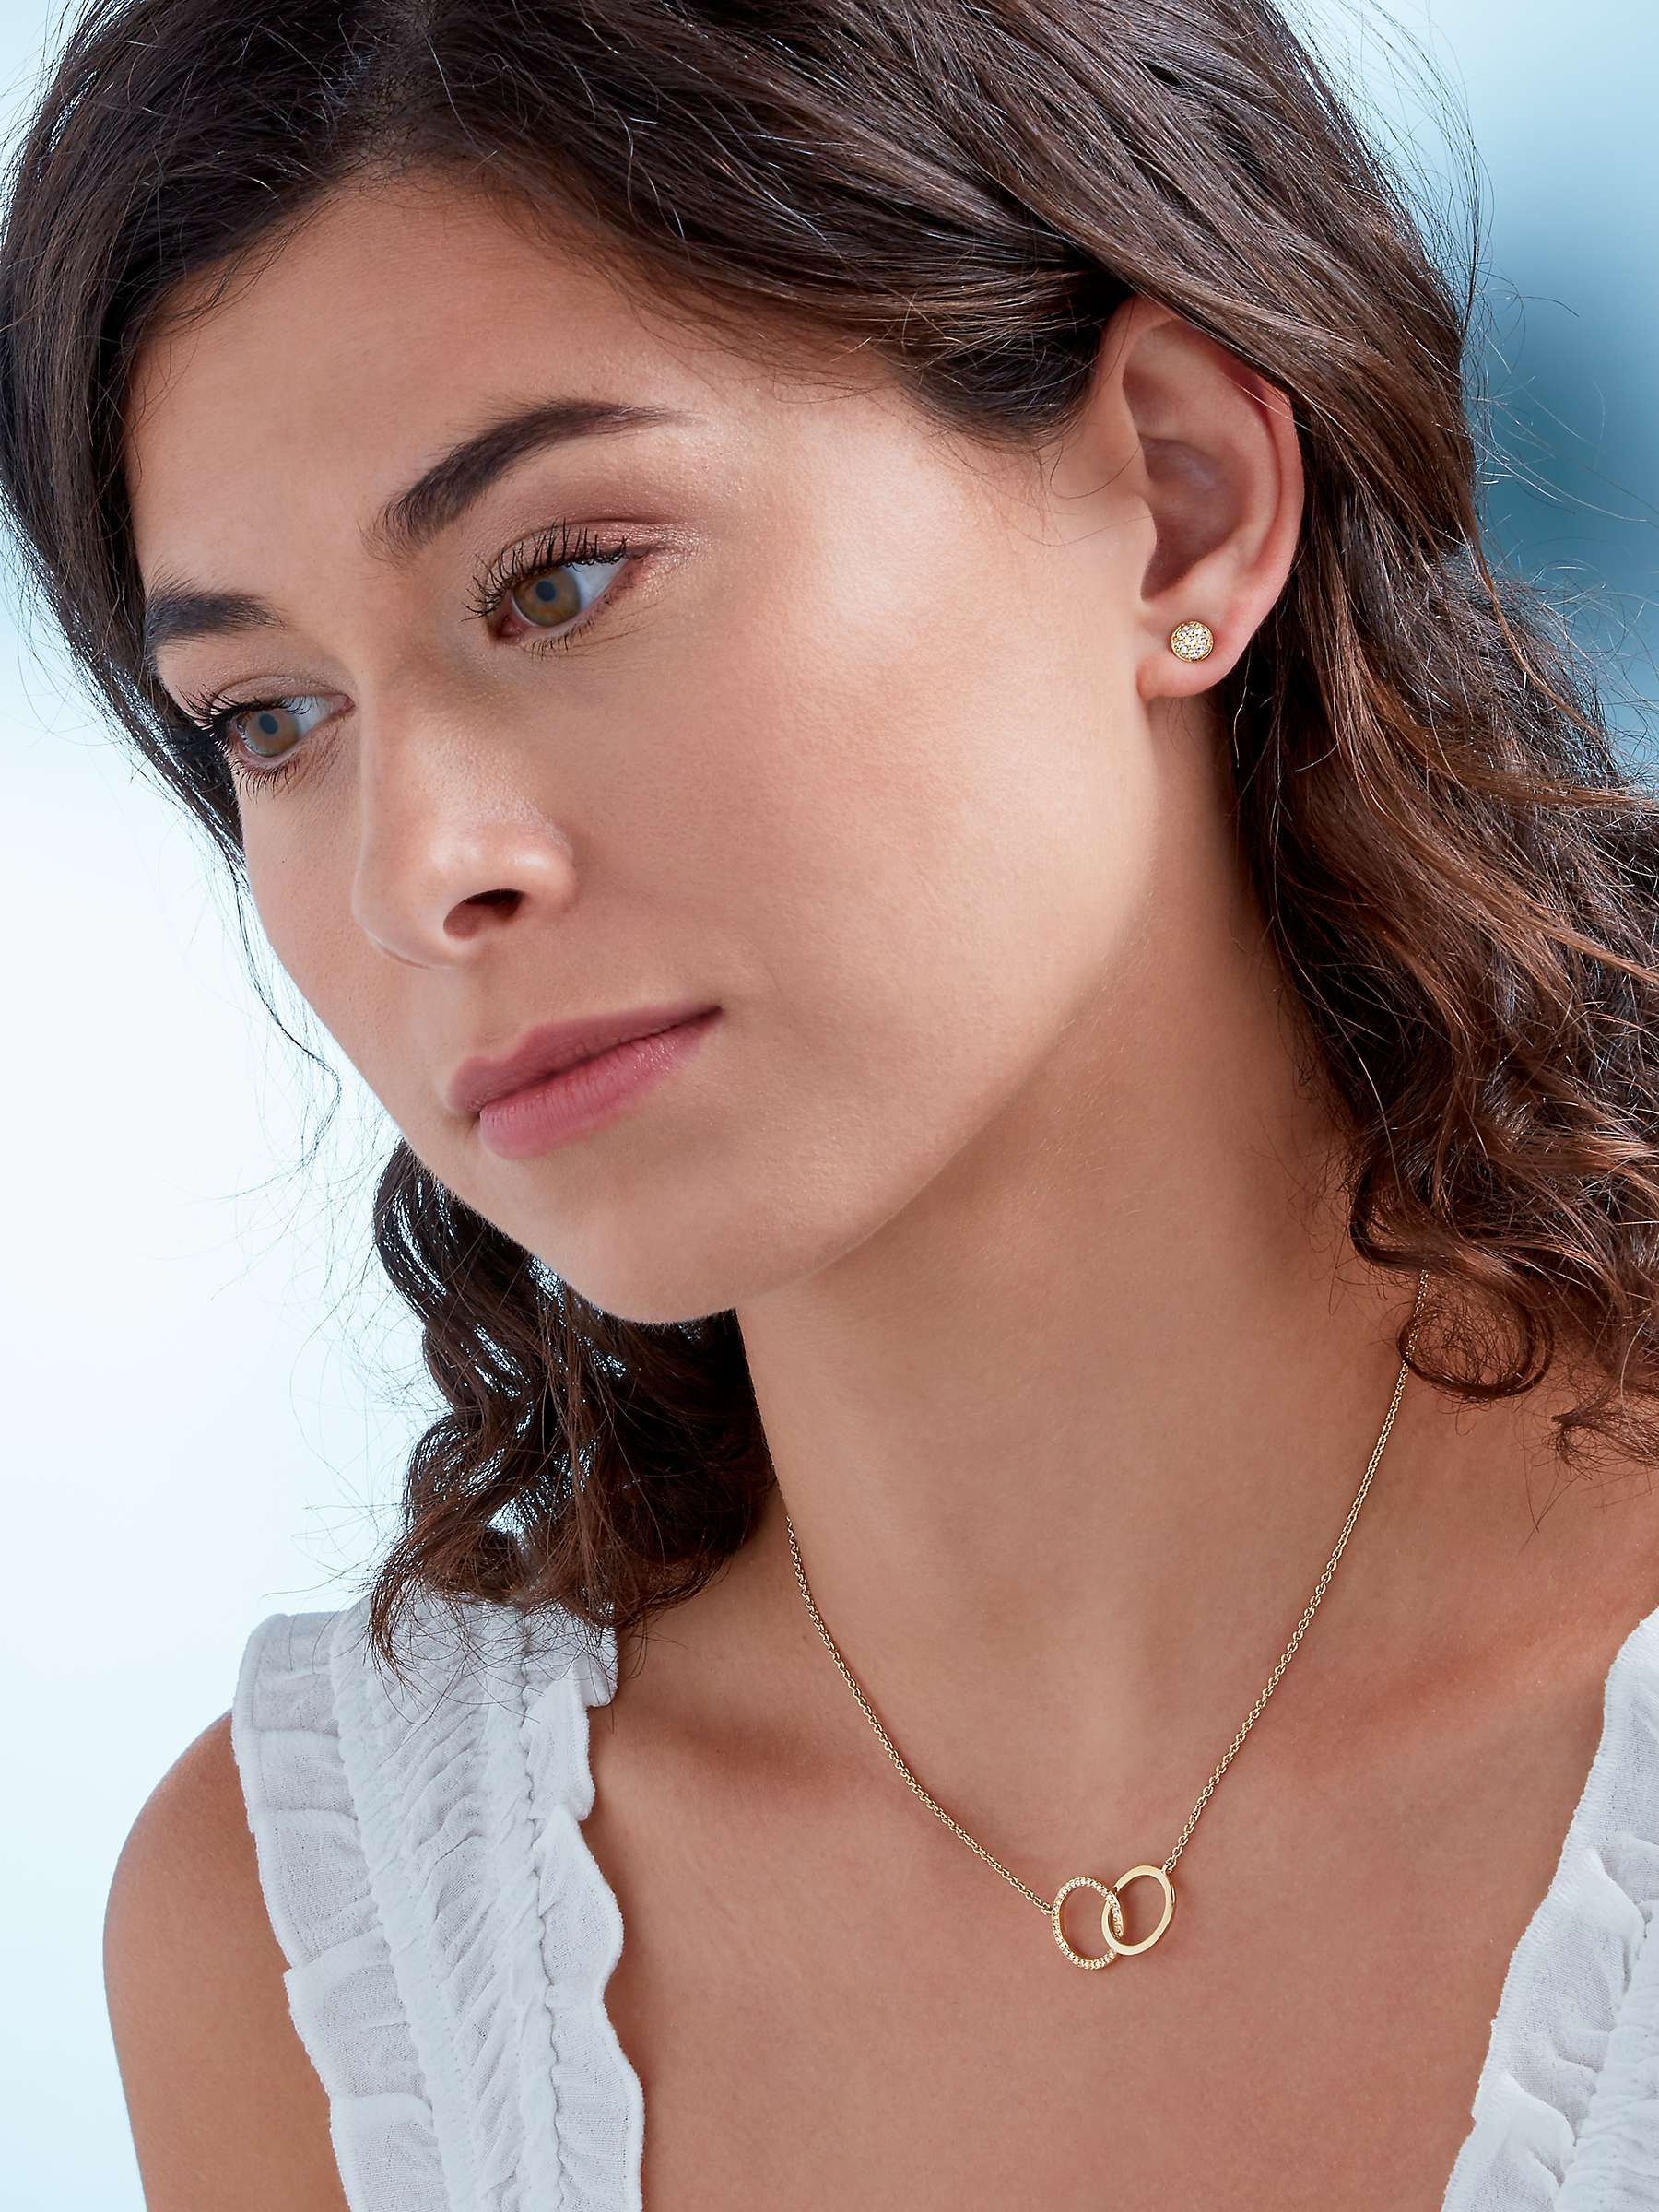 Buy Melissa Odabash Swarovski Crystal Pave Stud Earrings Online at johnlewis.com